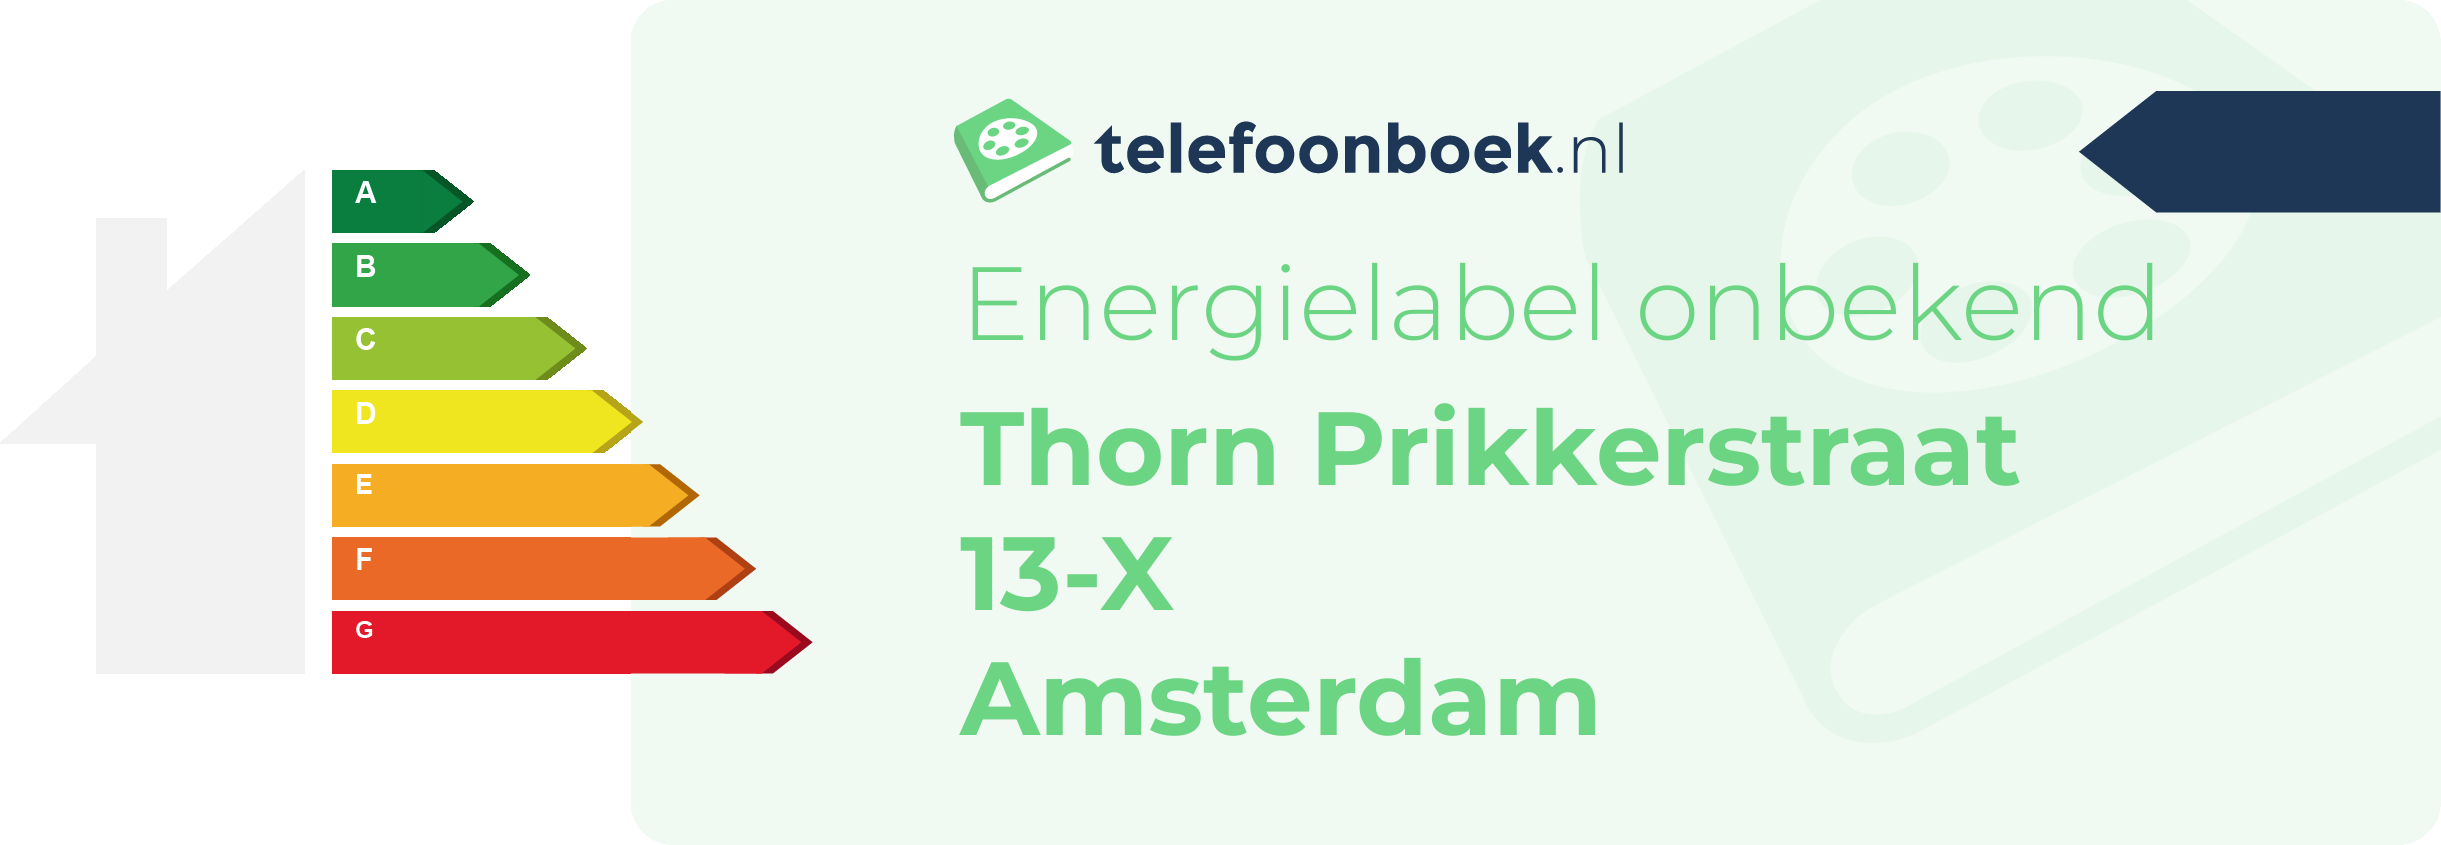 Energielabel Thorn Prikkerstraat 13-X Amsterdam